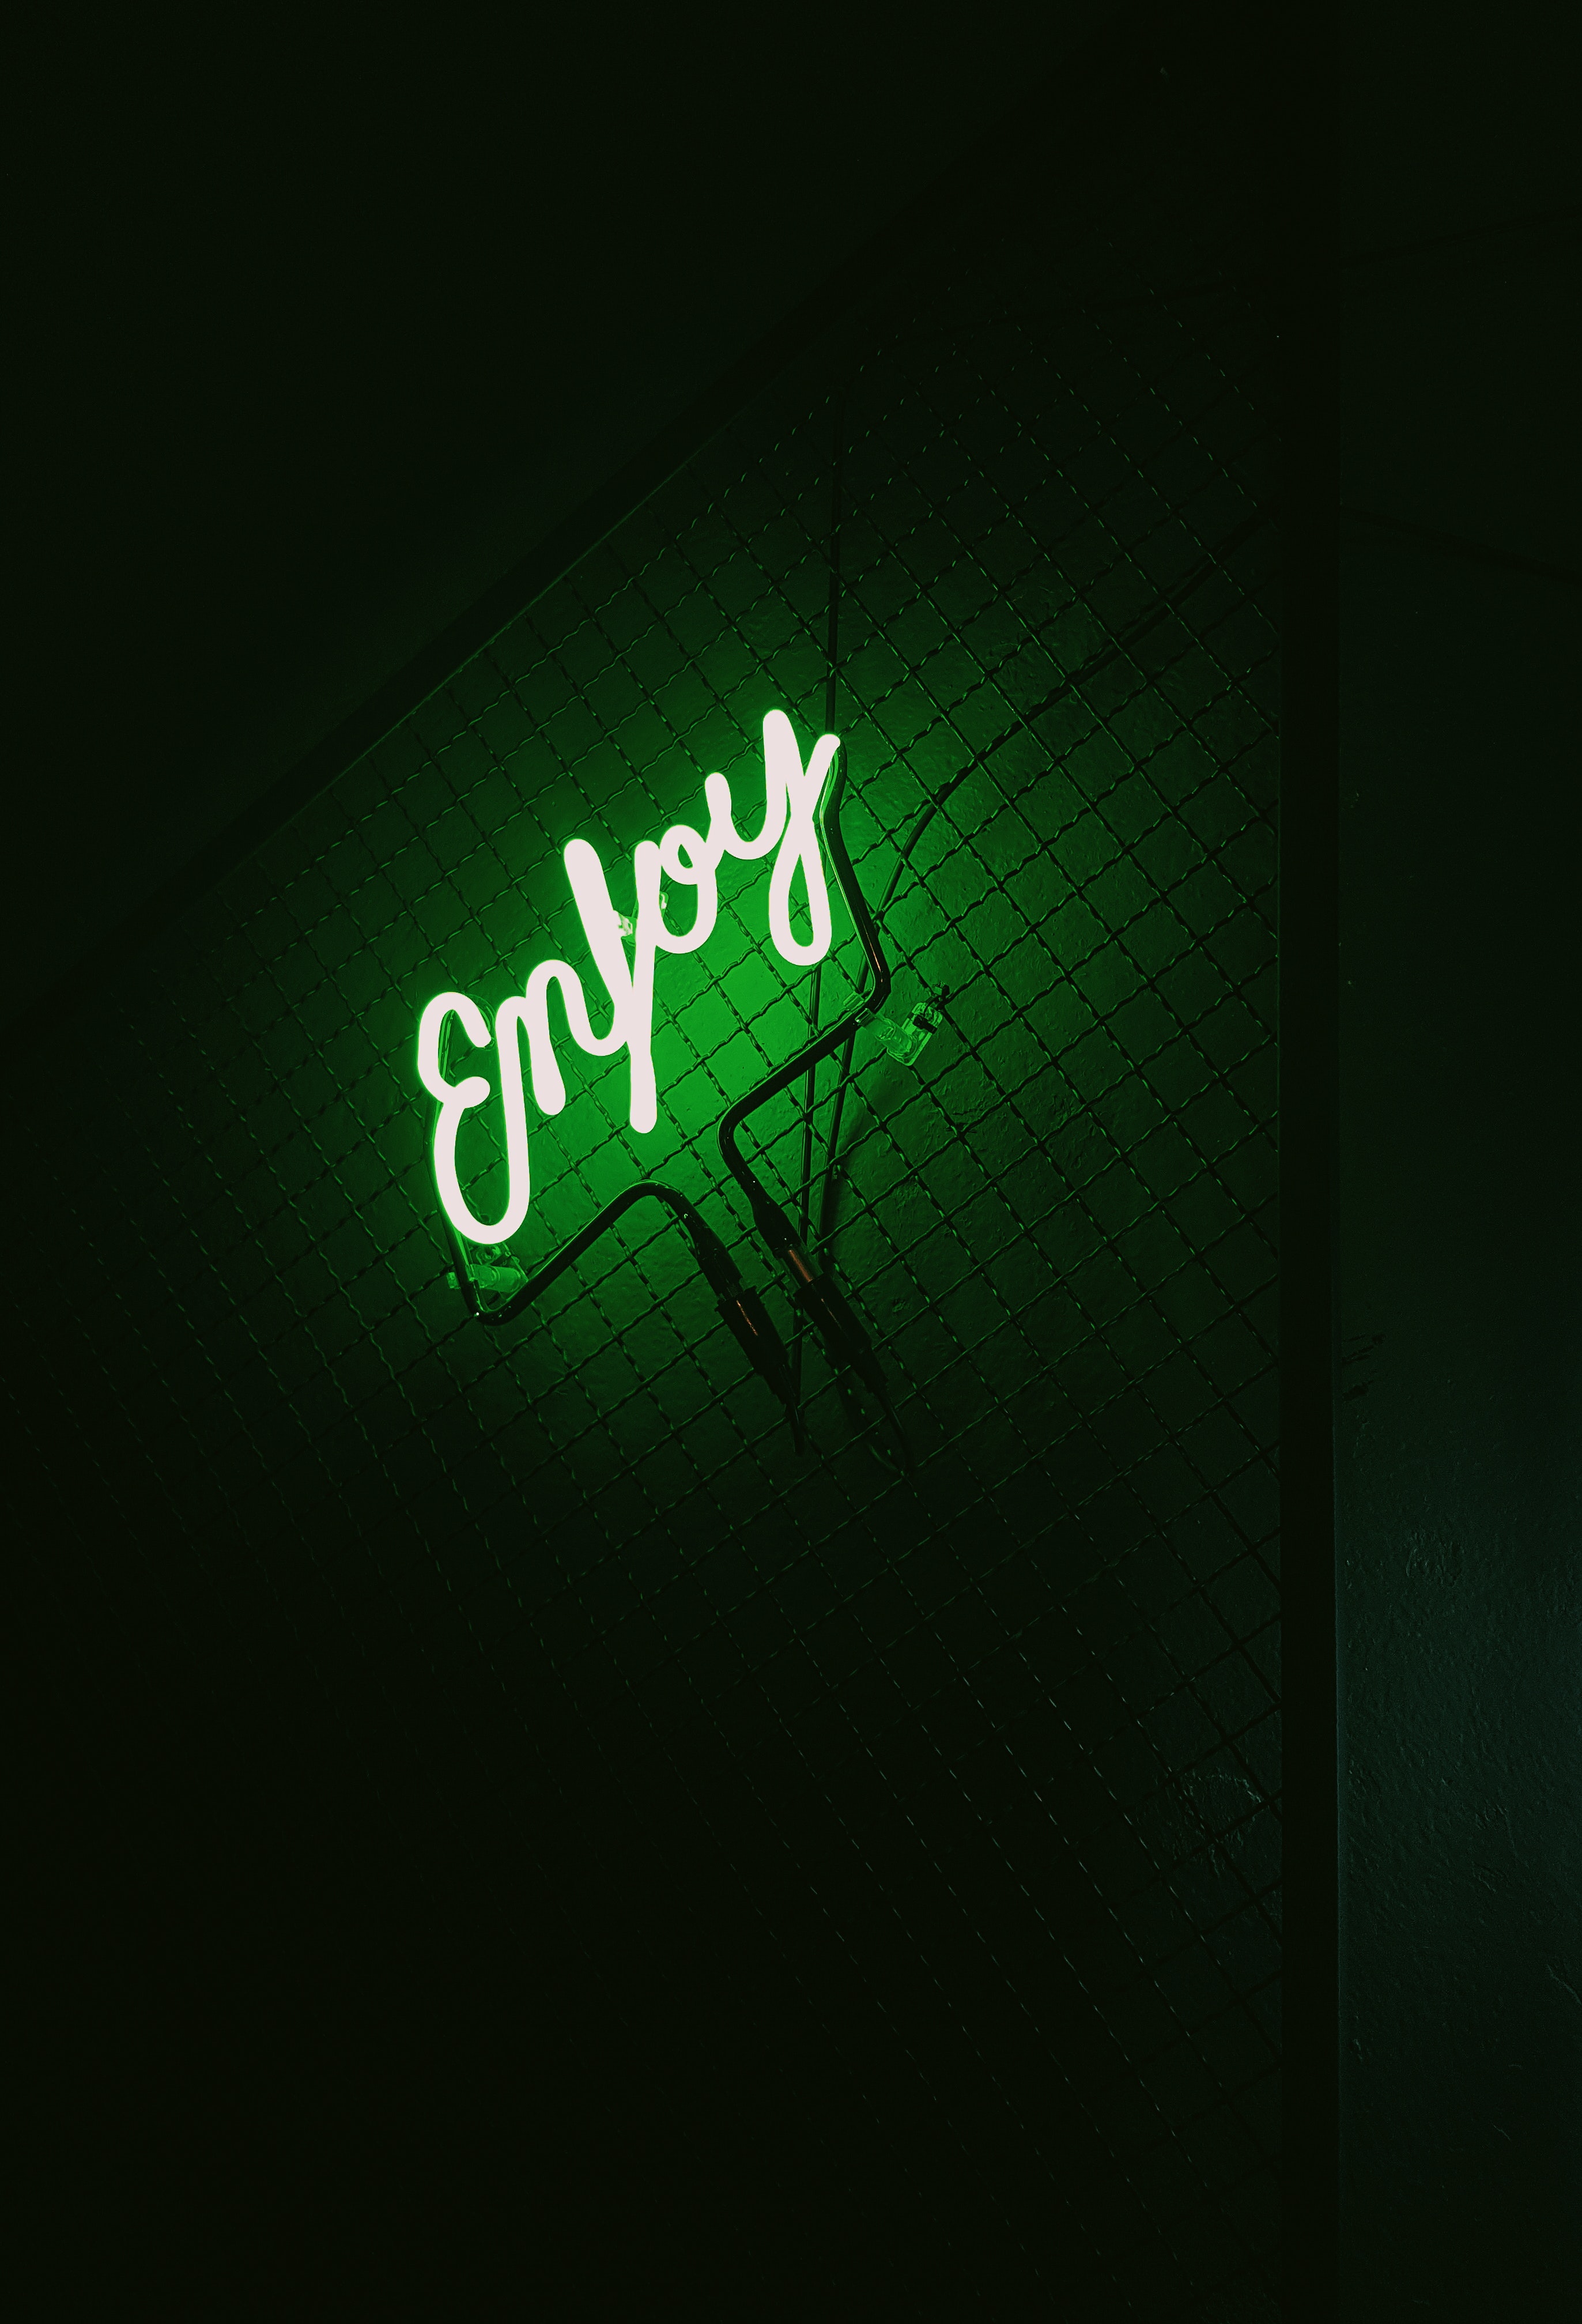 dark, backlight, words, neon, green, illumination, inscription